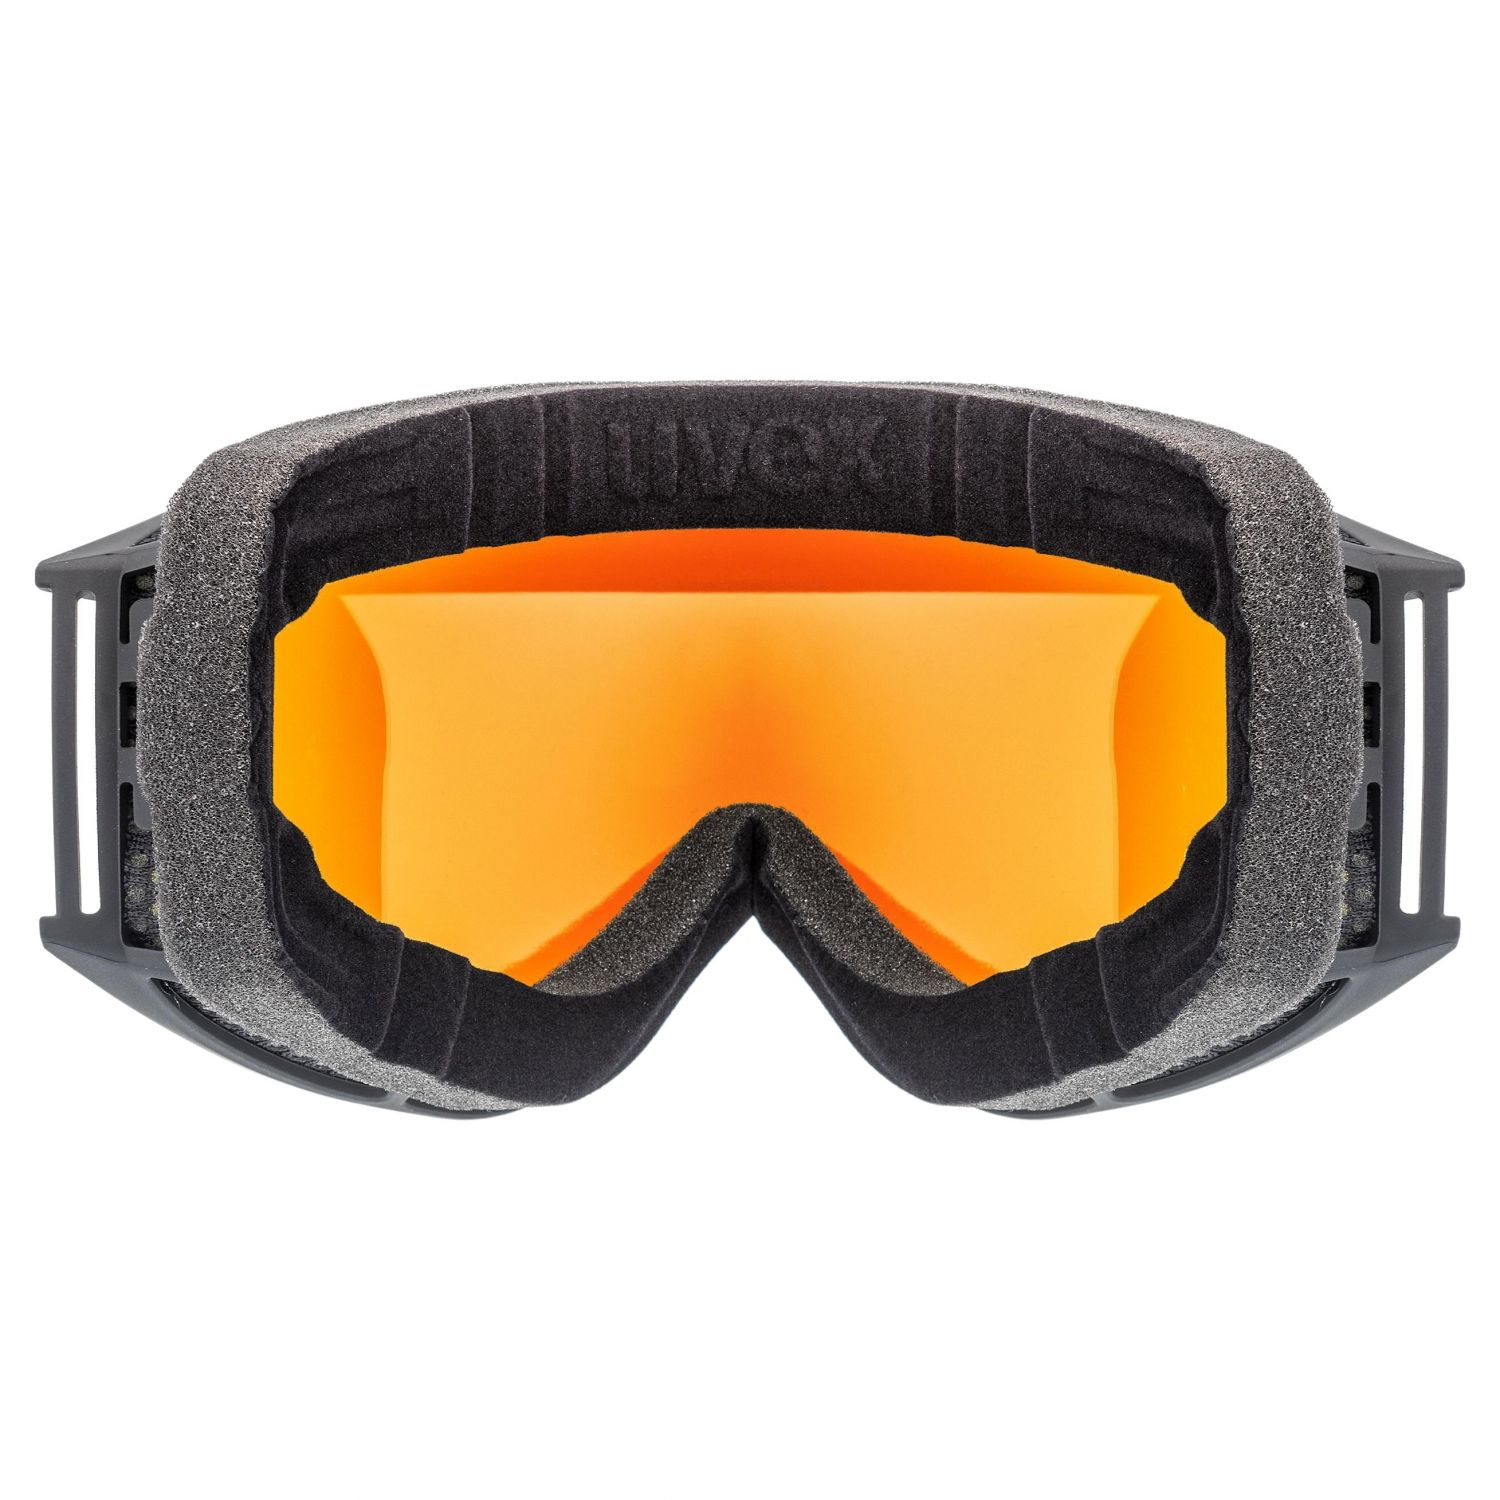 Uvex g.gl. 3000 CV, skibriller, sort/orange